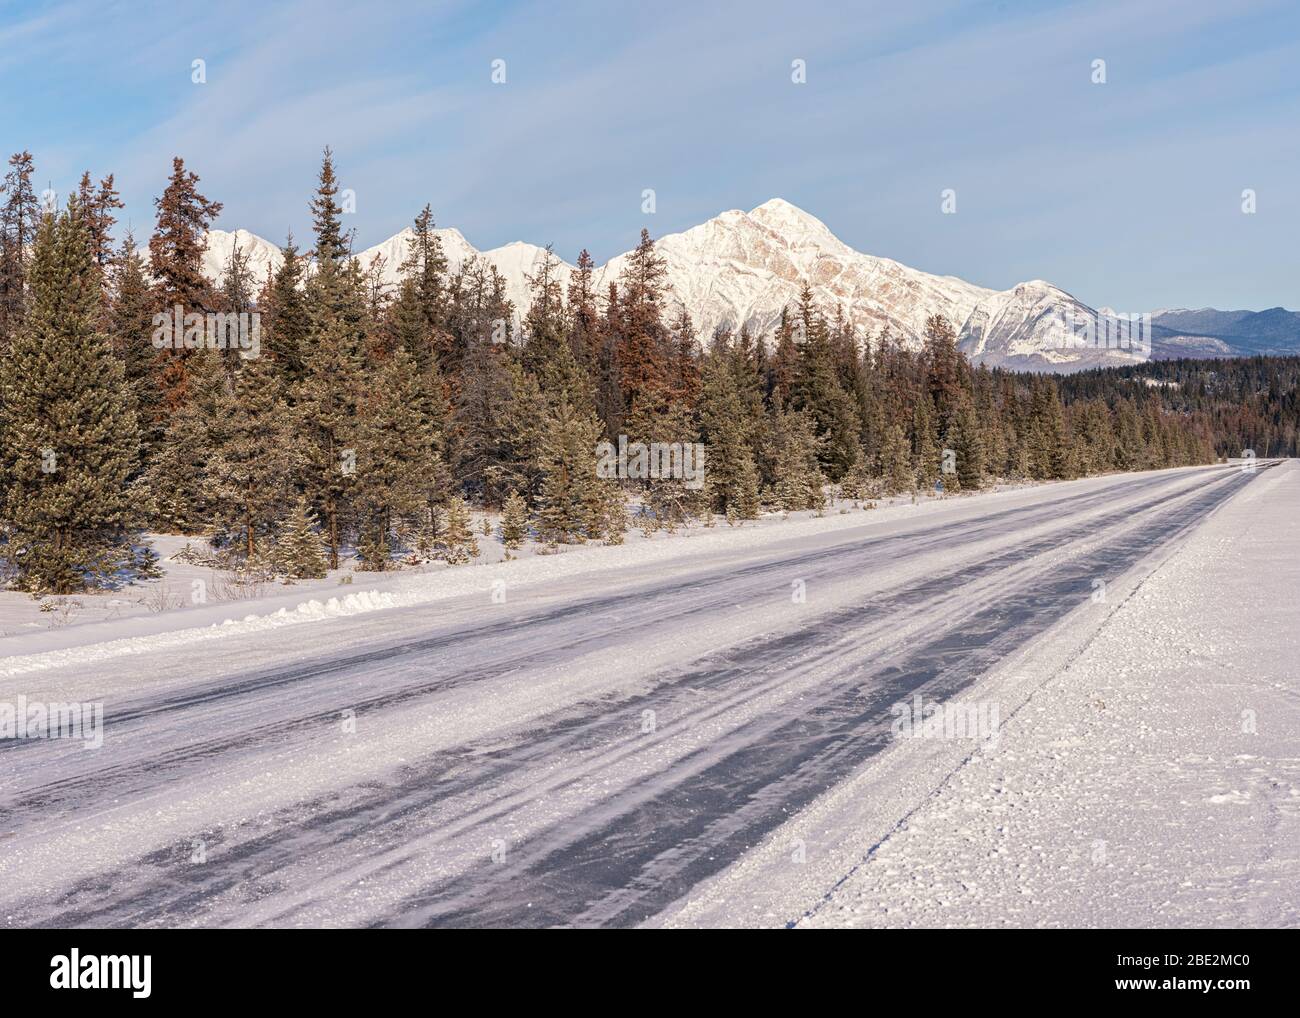 La neige couvrait la route transcanadienne 93 entre Banff et Jasper, en Alberta, au Canada Banque D'Images